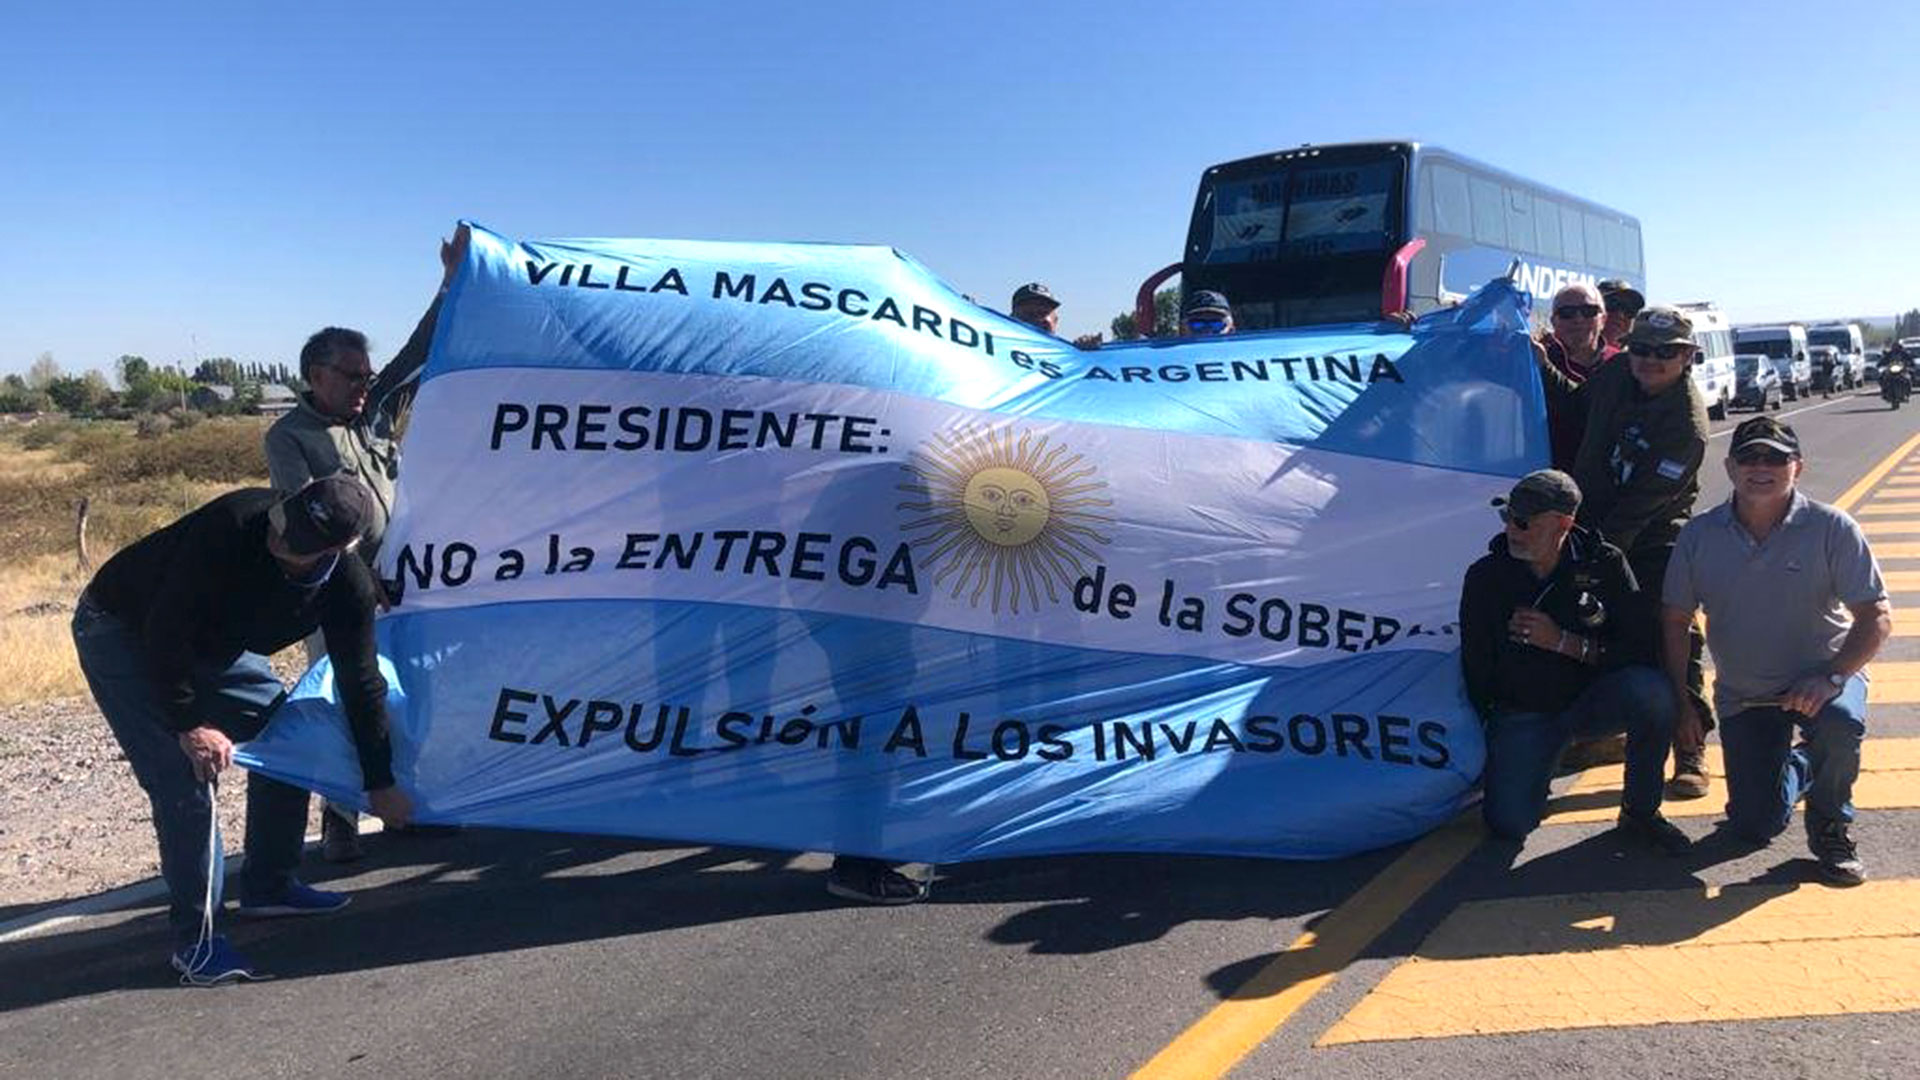 La entrega de tierras a los mapuches provocó que los ciudadanos salgan a manifestarse en contra la decisión (Foto: @jp_navio)